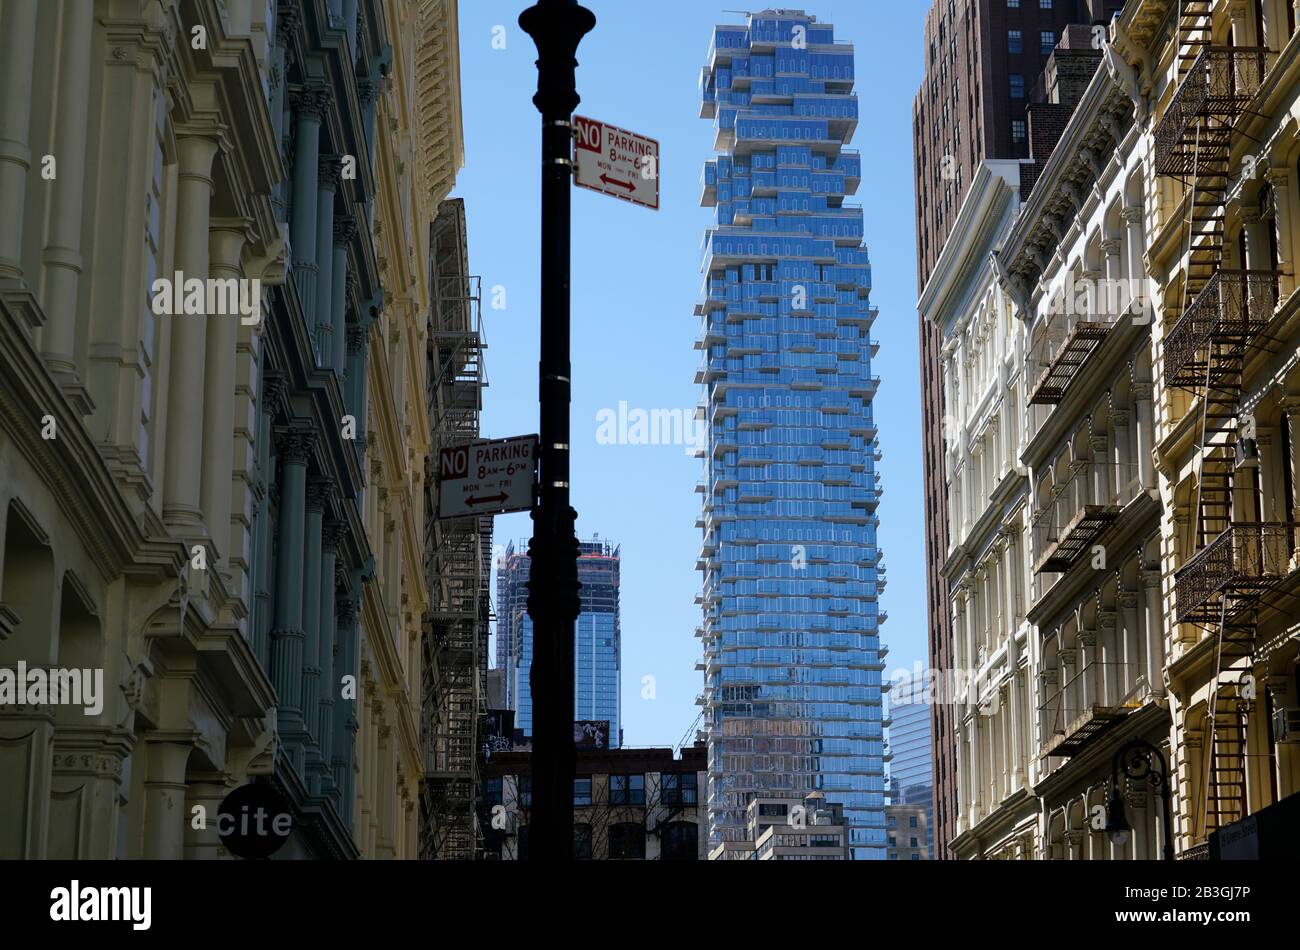 Edifici storici in ghisa nel quartiere SoHo con un alto e lussuoso edificio del 56 Leonard Street a Tribeca in background.Lower Manhattan.New York City.USA Foto Stock